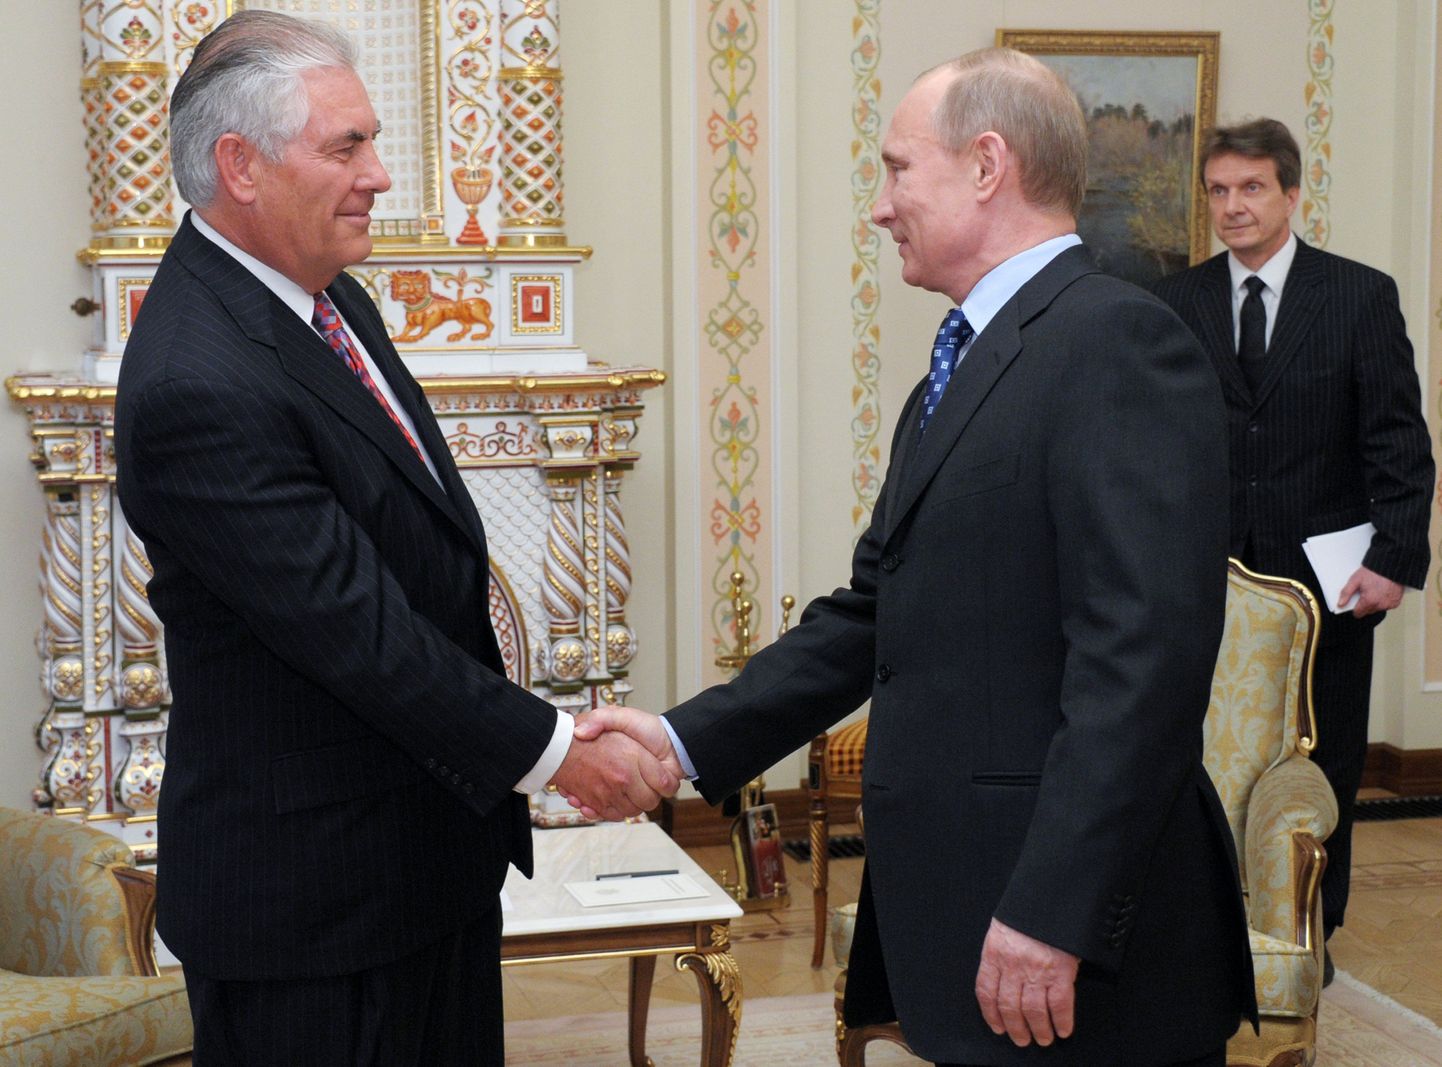 Venemaa peaminister Vladimir Putin ja Exxon Mobii juhatuse esimees Rex W. Tillerson kätt surumas.